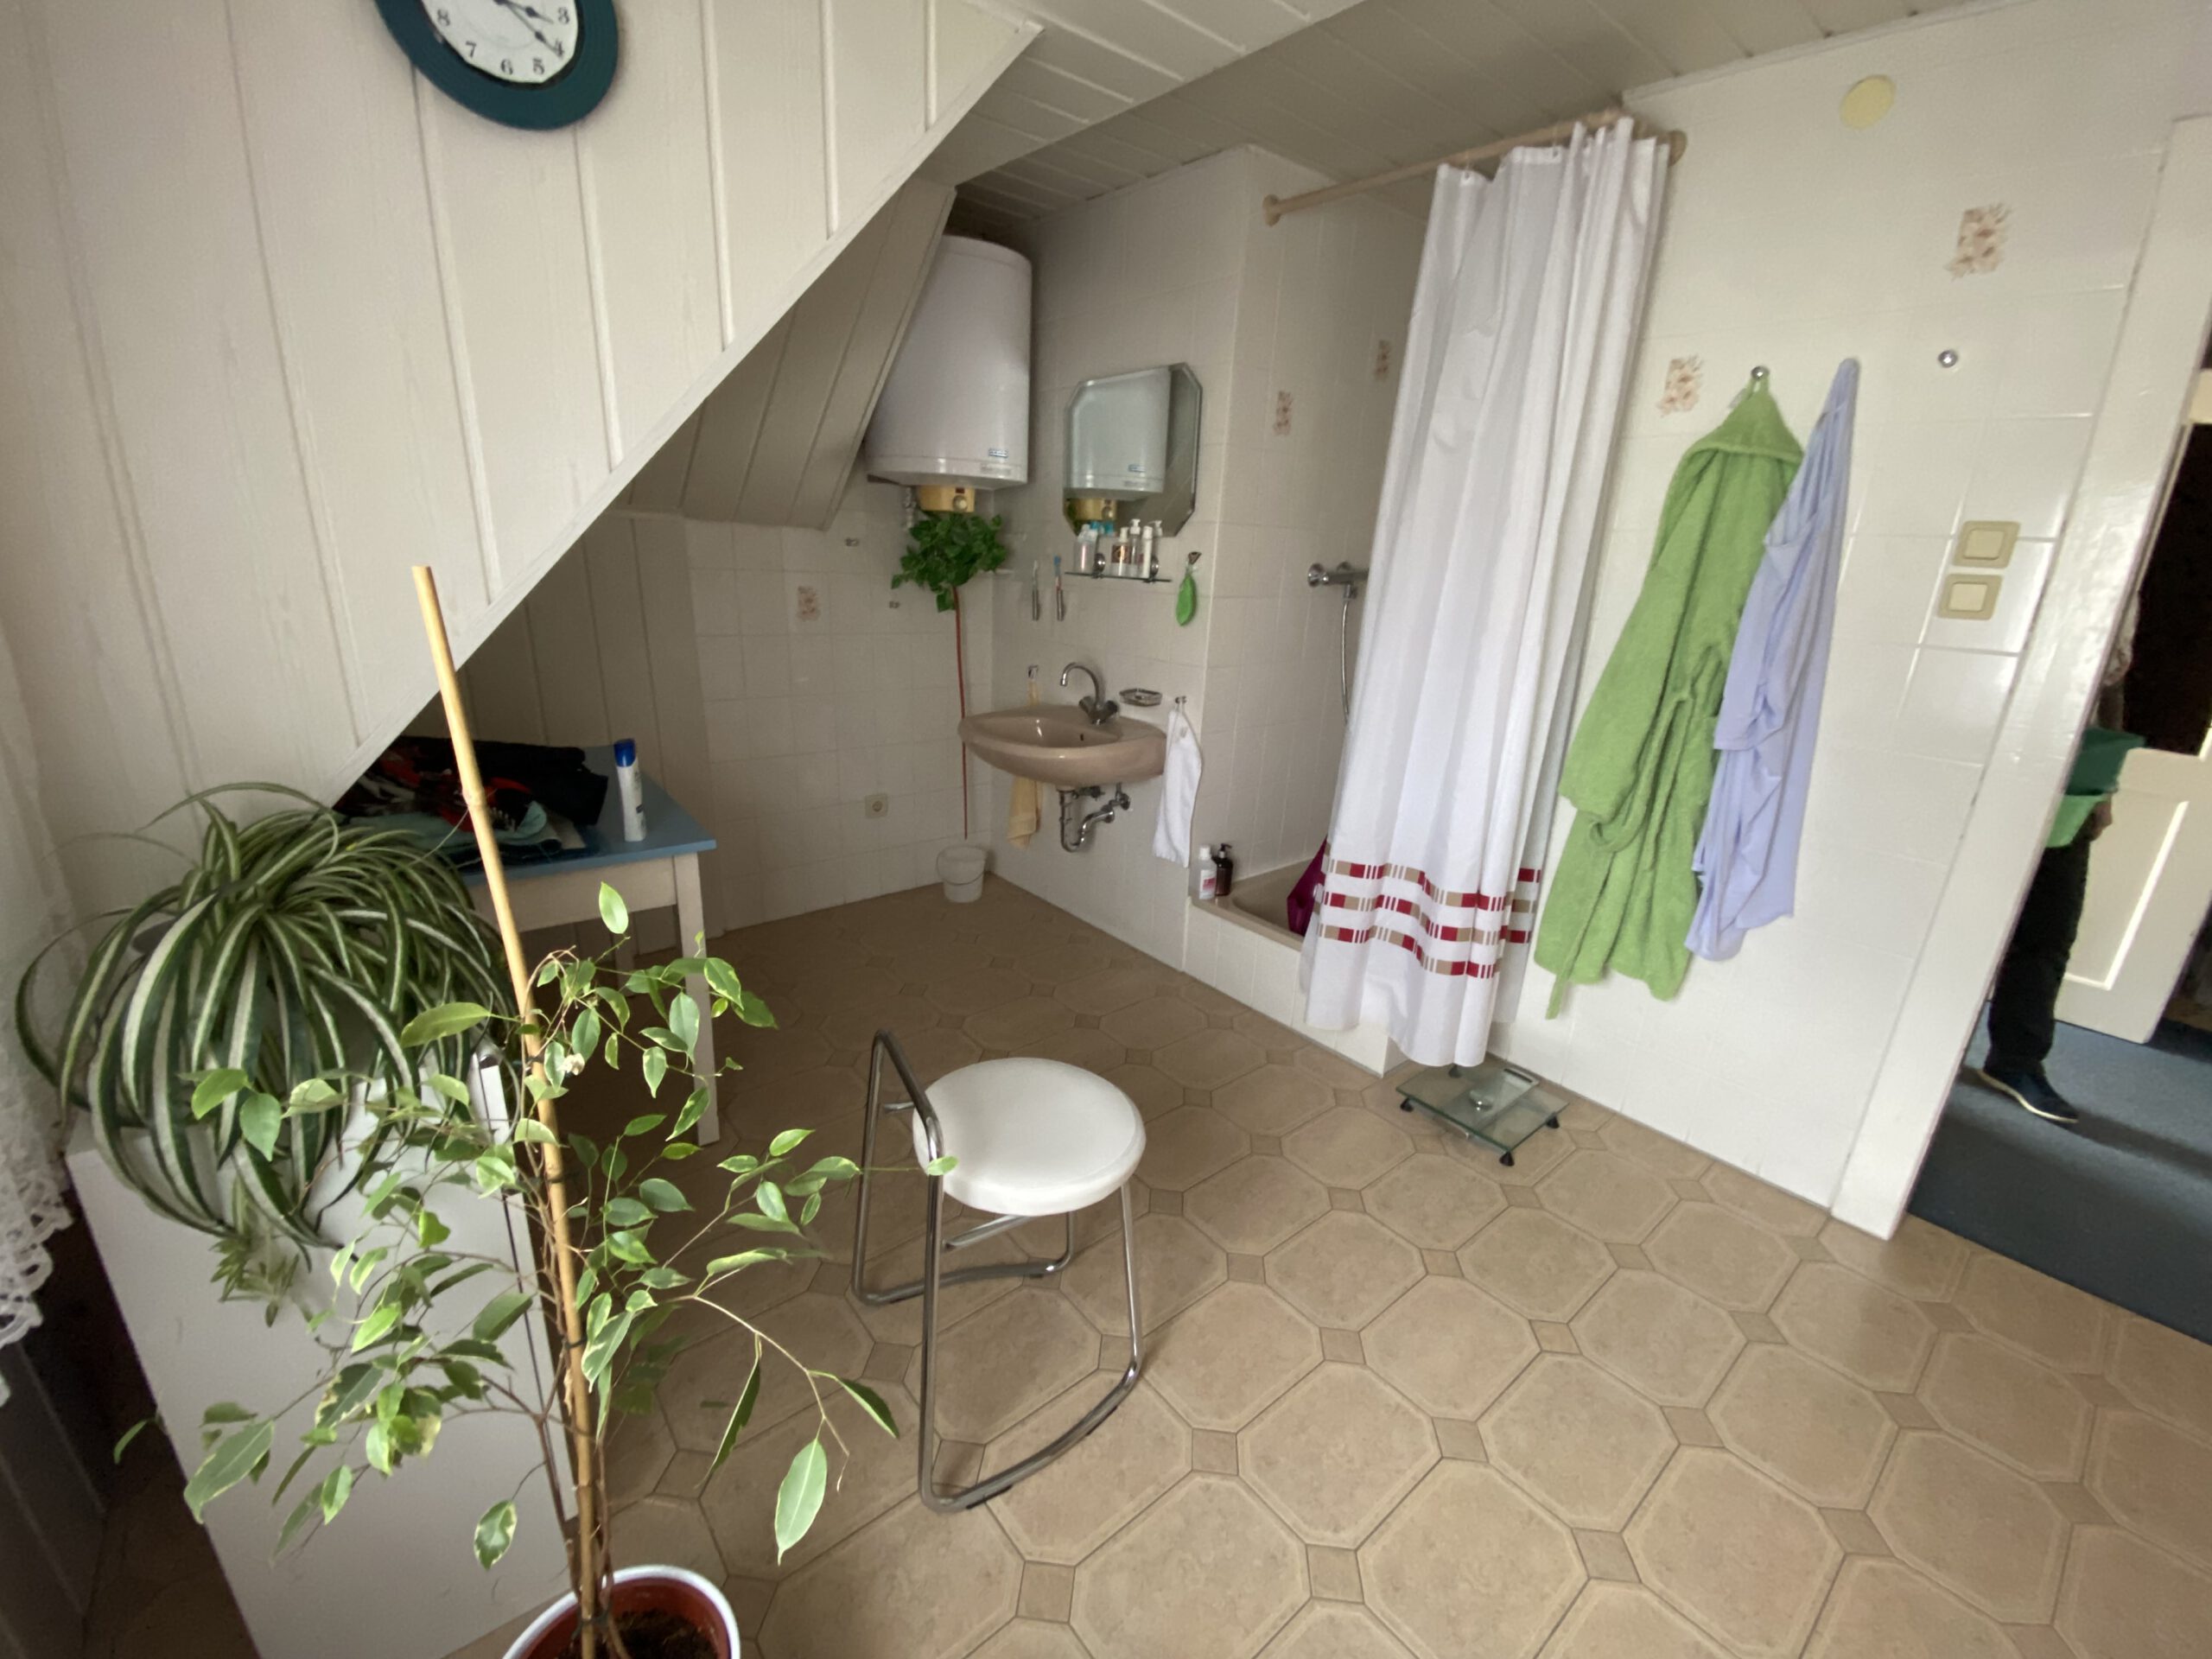 Einfamilienhaus in der Frohen Zukunft -Badezimmer mit Dusche